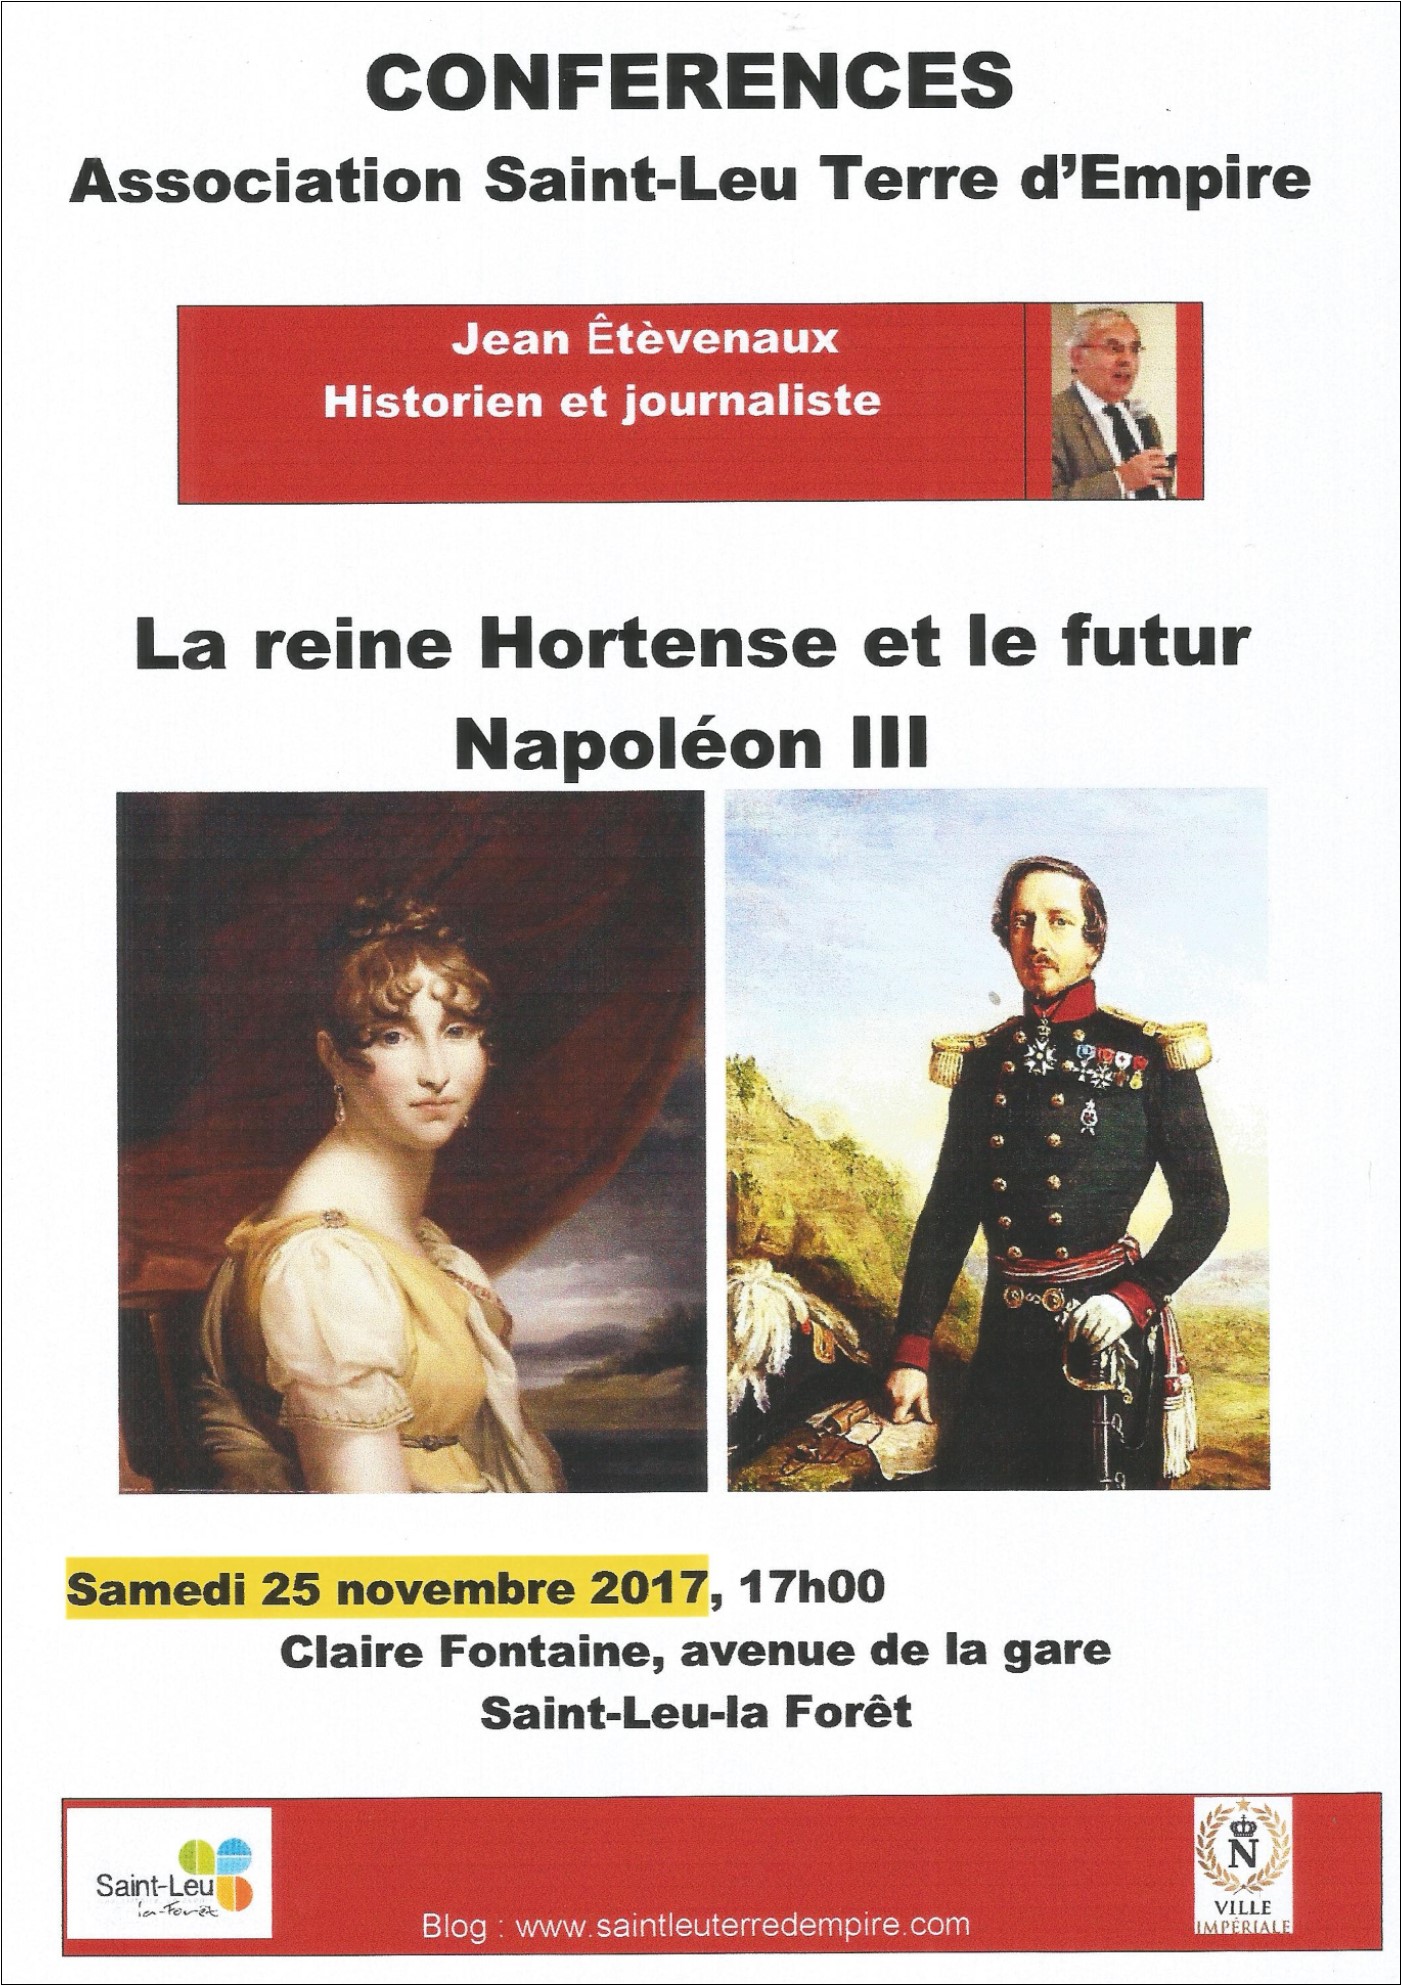 conférence à Saint-Leu-la-Forêt le 25 novembre 2017